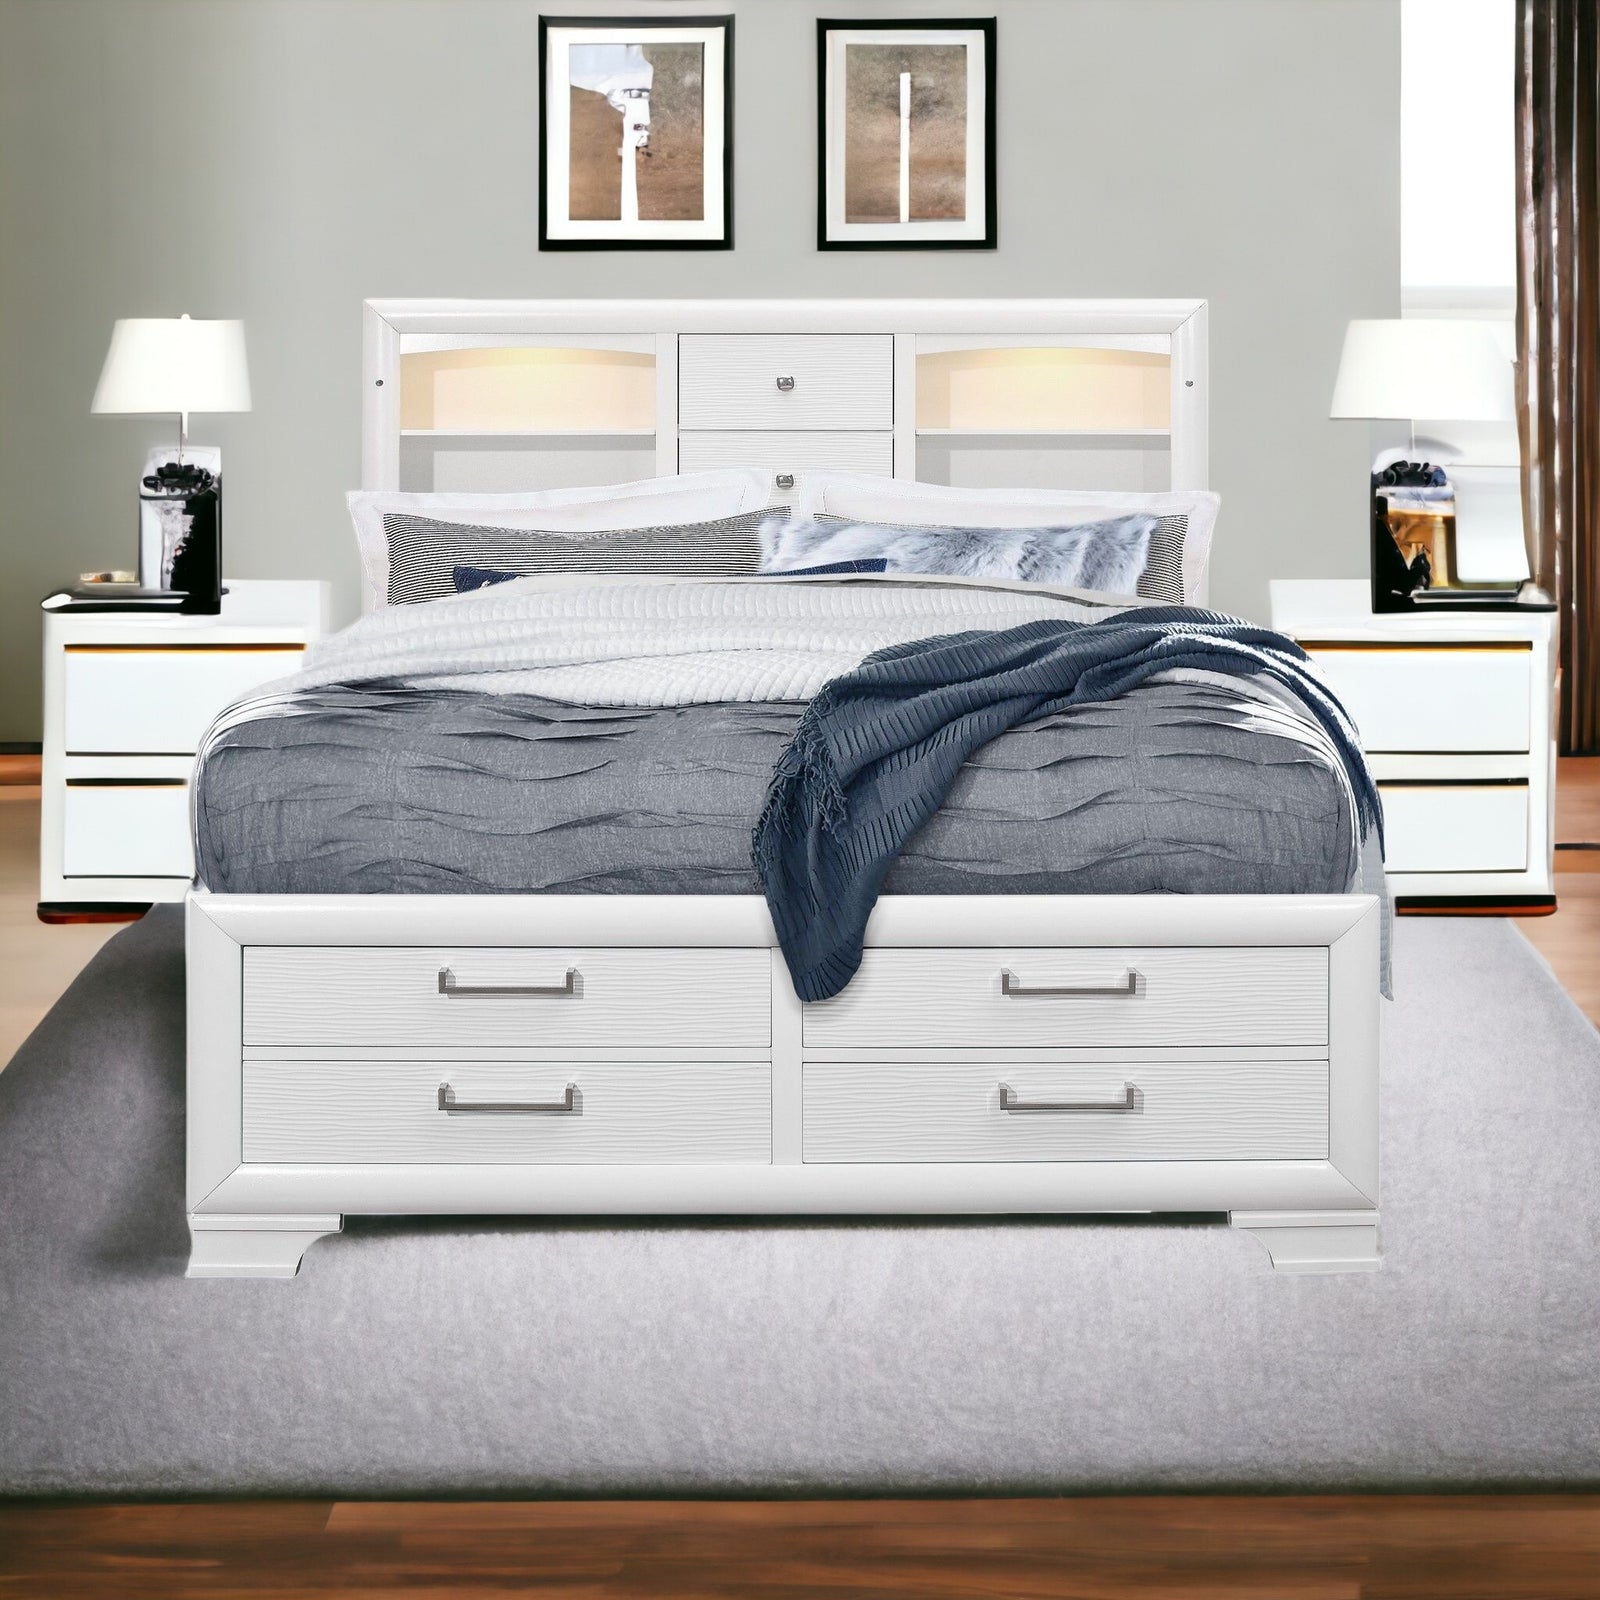 White Rubberwood Full Bed With Bookshelves Headboard  Led Lightning  6 Drawers